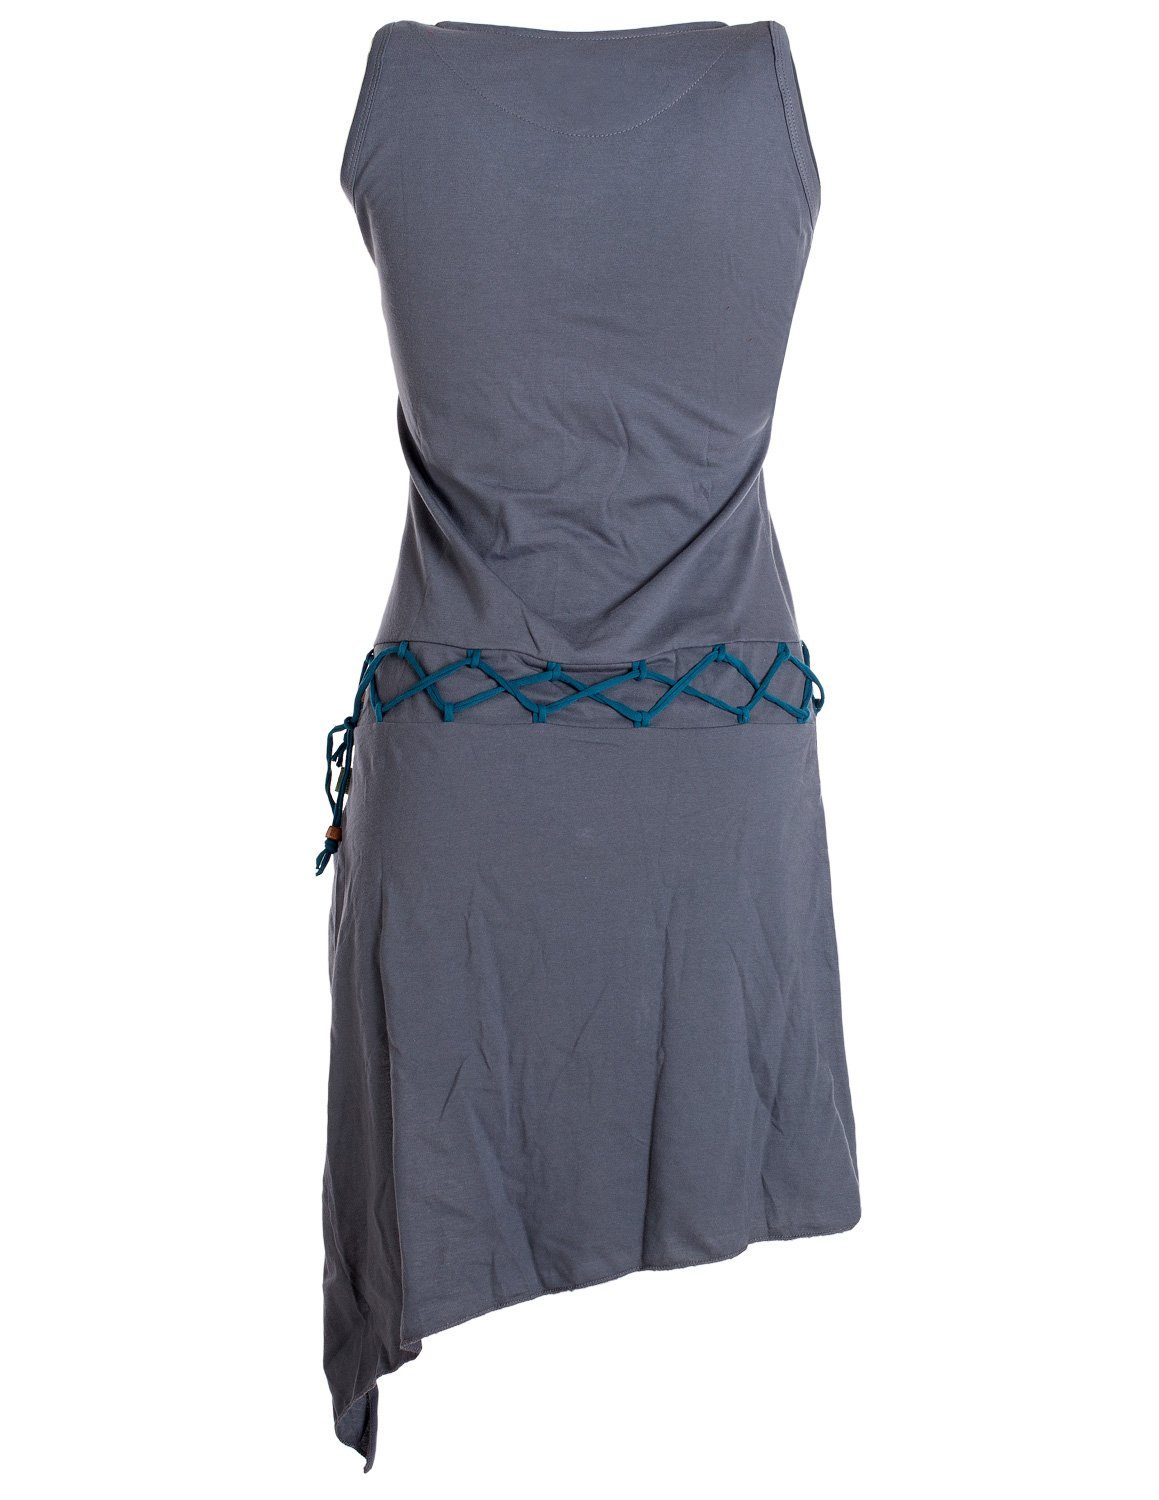 Vishes Sommerkleid Goa Gürtel-Schnürung Elfen Hippie, Beinausschnitt grau Boho, Kleid Style asymmetrisch Ärmelloses